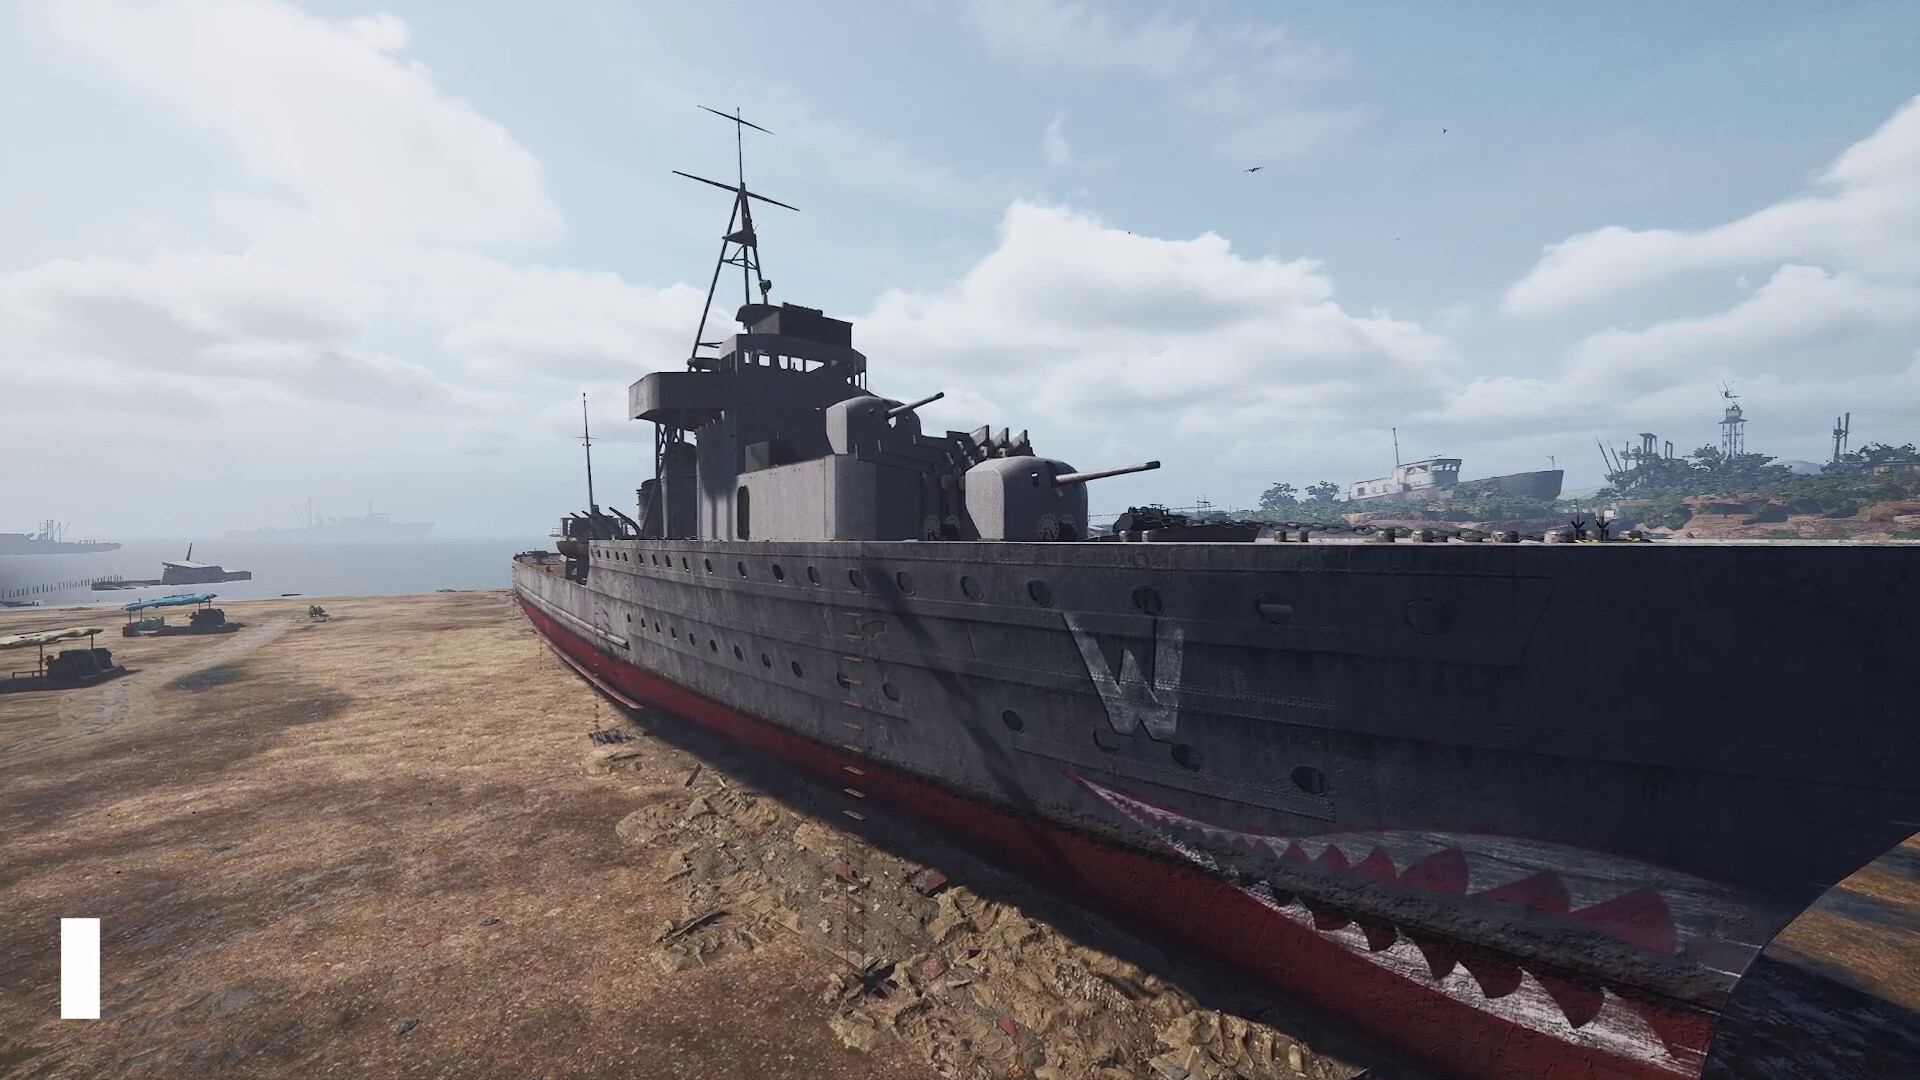 特意好评模拟修筑游戏《船舶墓地模拟器2》新DLC“战舰”上架Steam商铺